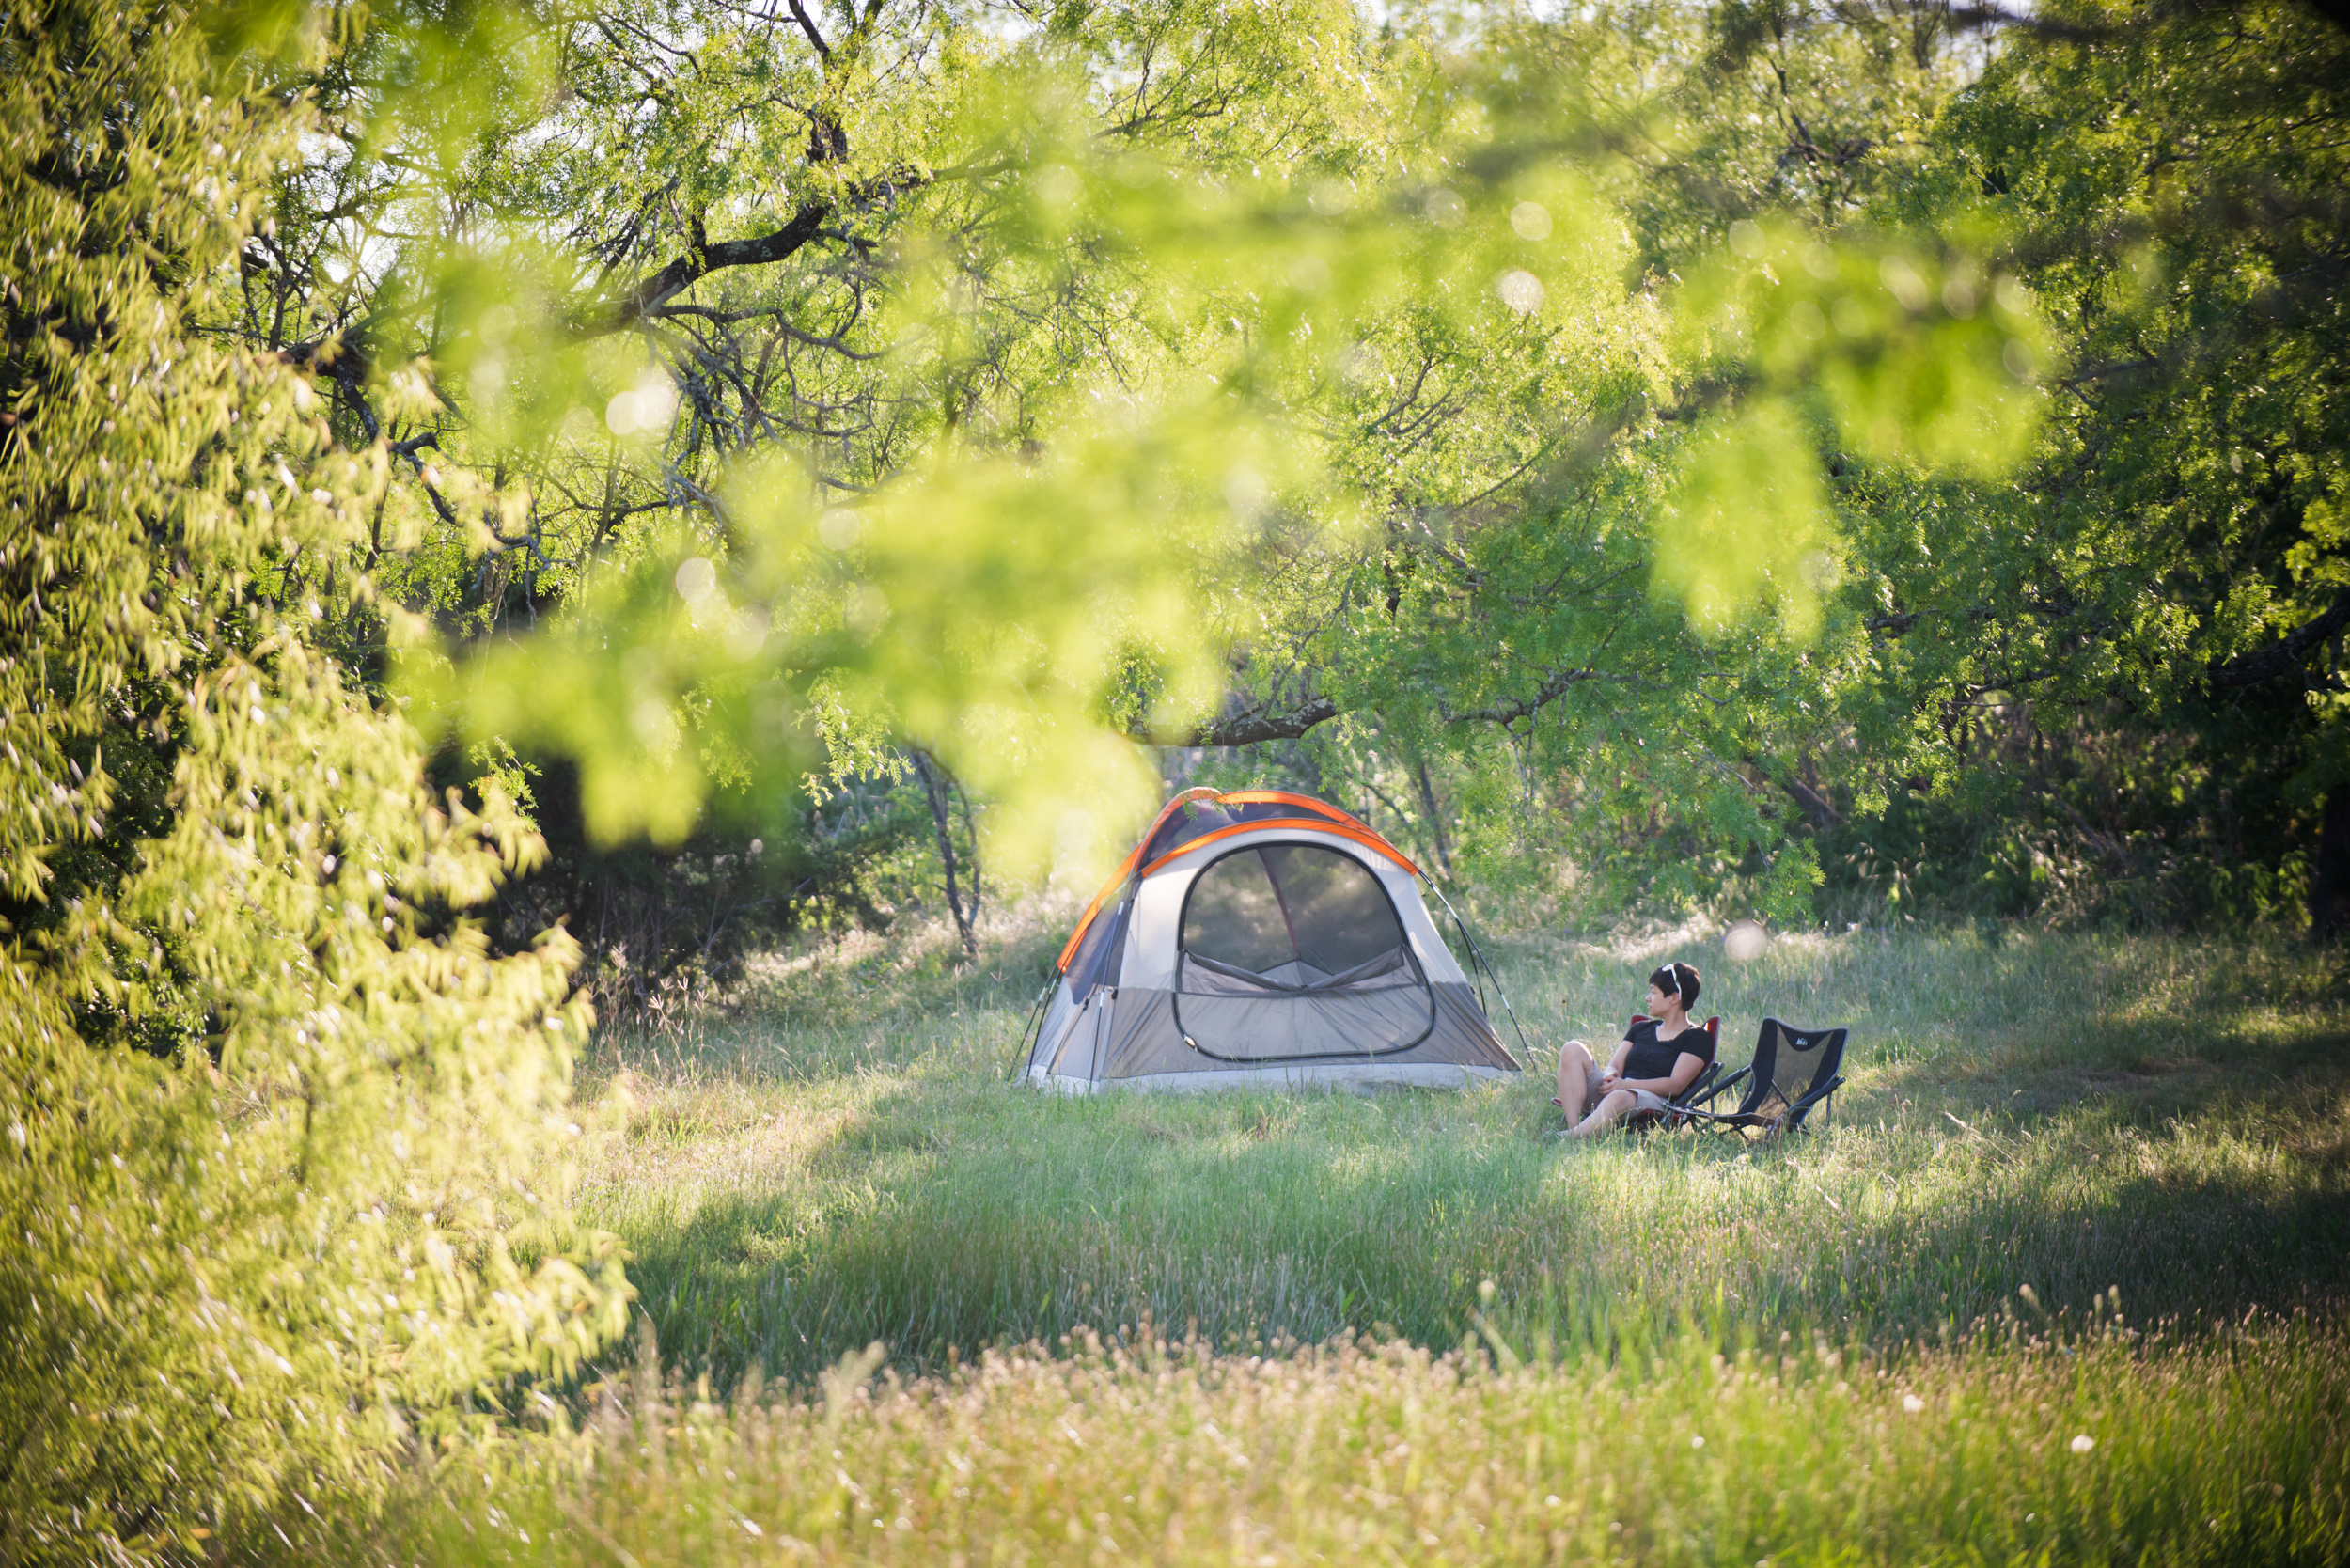 Hipcamp ofrece muchas opciones de camping y RV de bajo costo en Texas que son prácticamente gratuitas